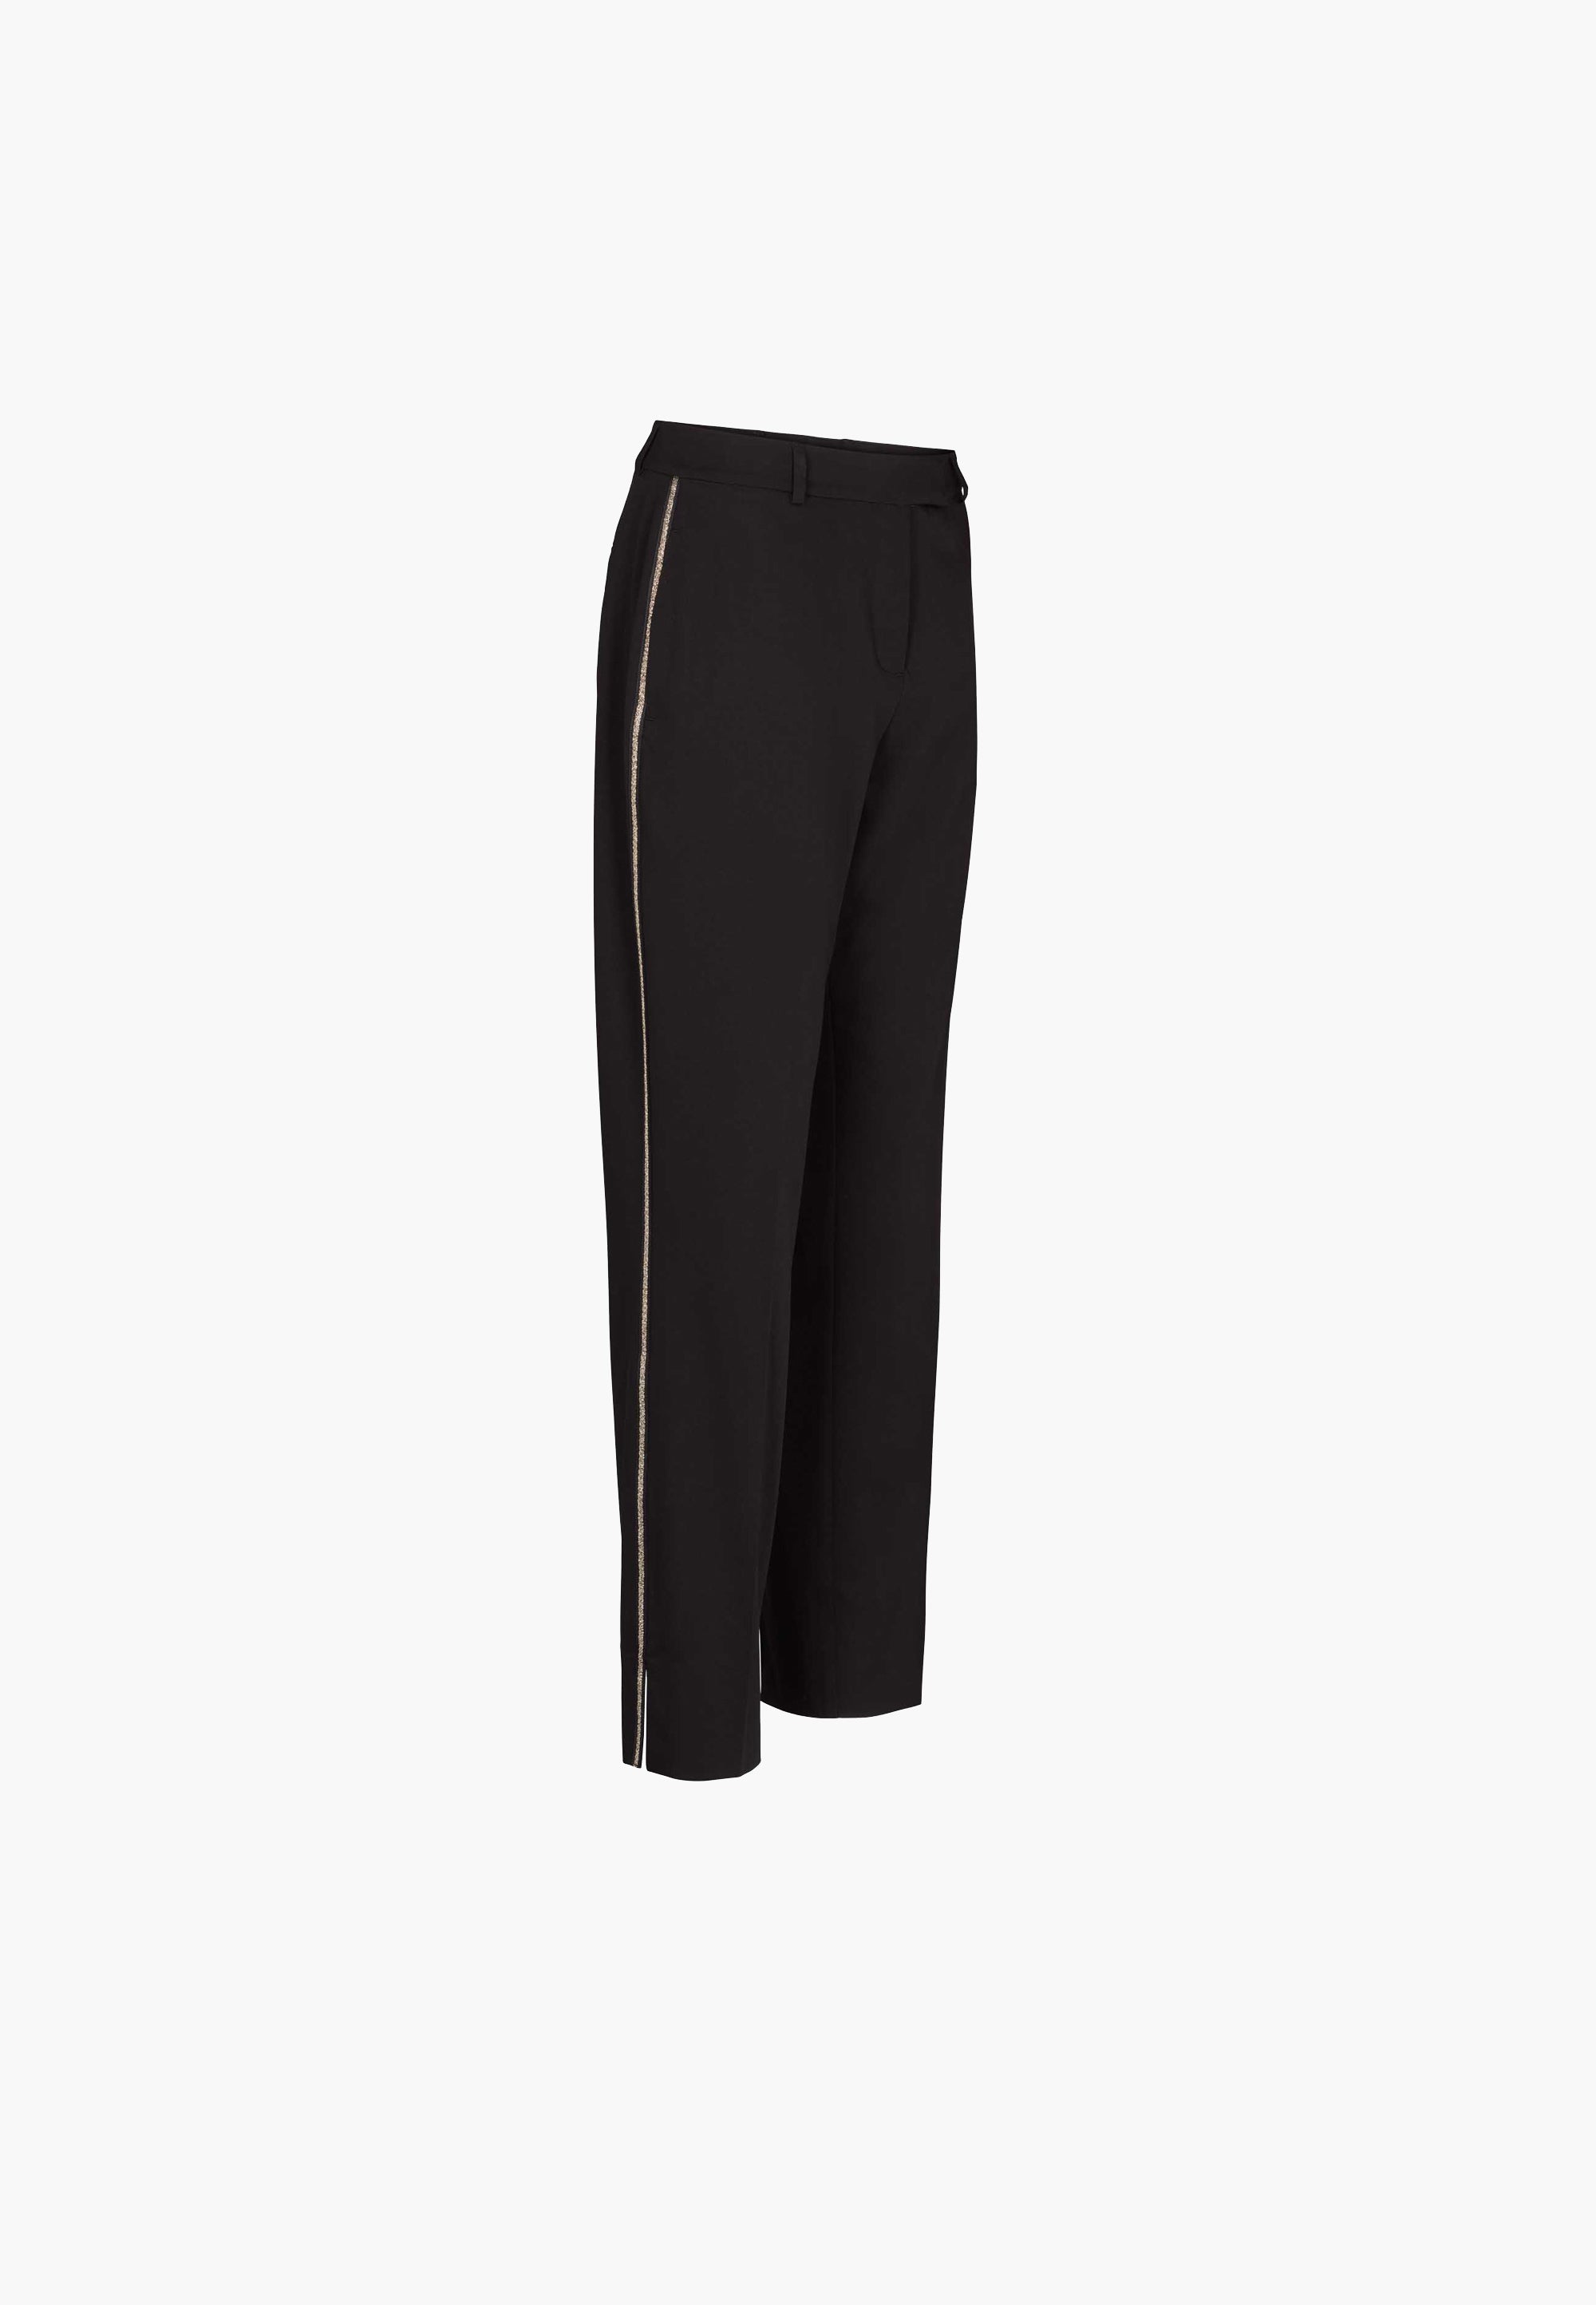 LAURIE  Julianne Pipe Regular - Short Length Trousers REGULAR 99000 Black